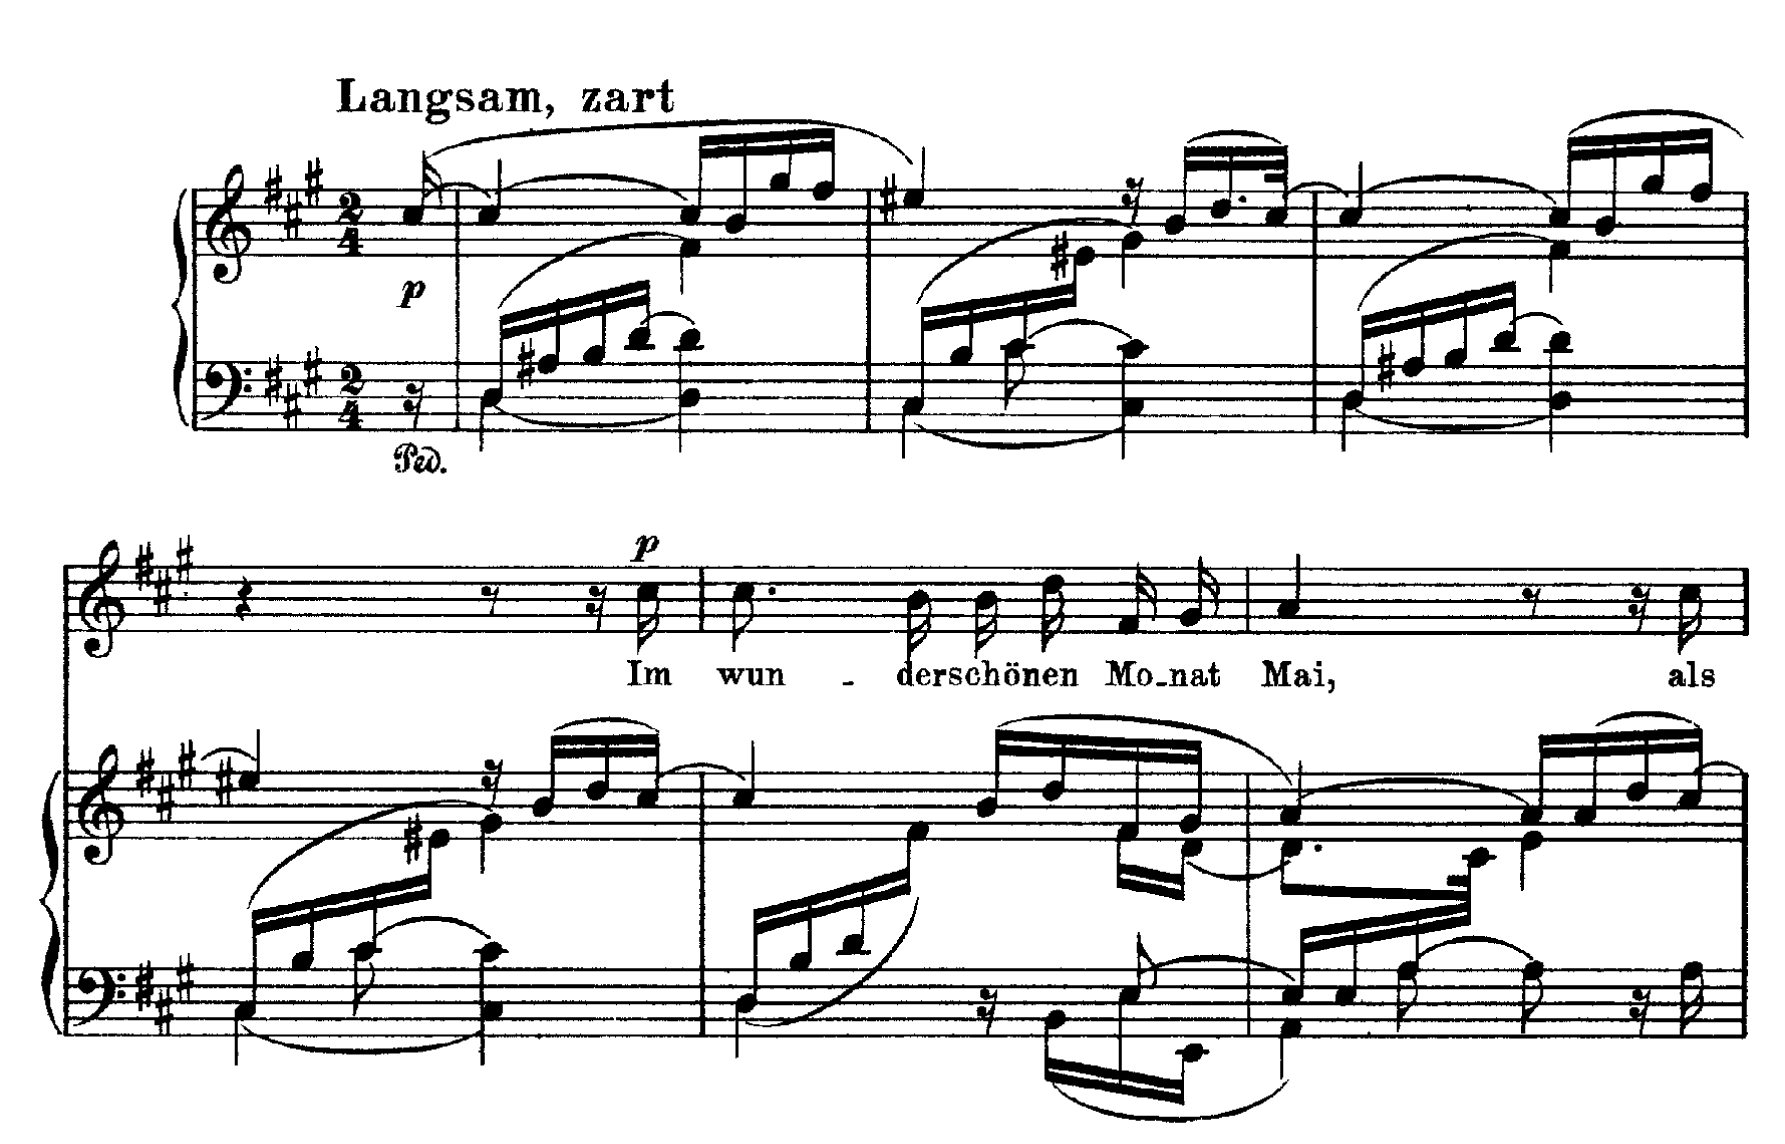 舒曼沉迷於細微的意念，這些意念在藝術歌曲中，呈現出獨特的詩意。在《詩人之歌》(Dichterliebe) 的第一首歌曲，小調的鋼琴與大調的人聲，富有懸念地打開了那迷幻般美麗的五月。